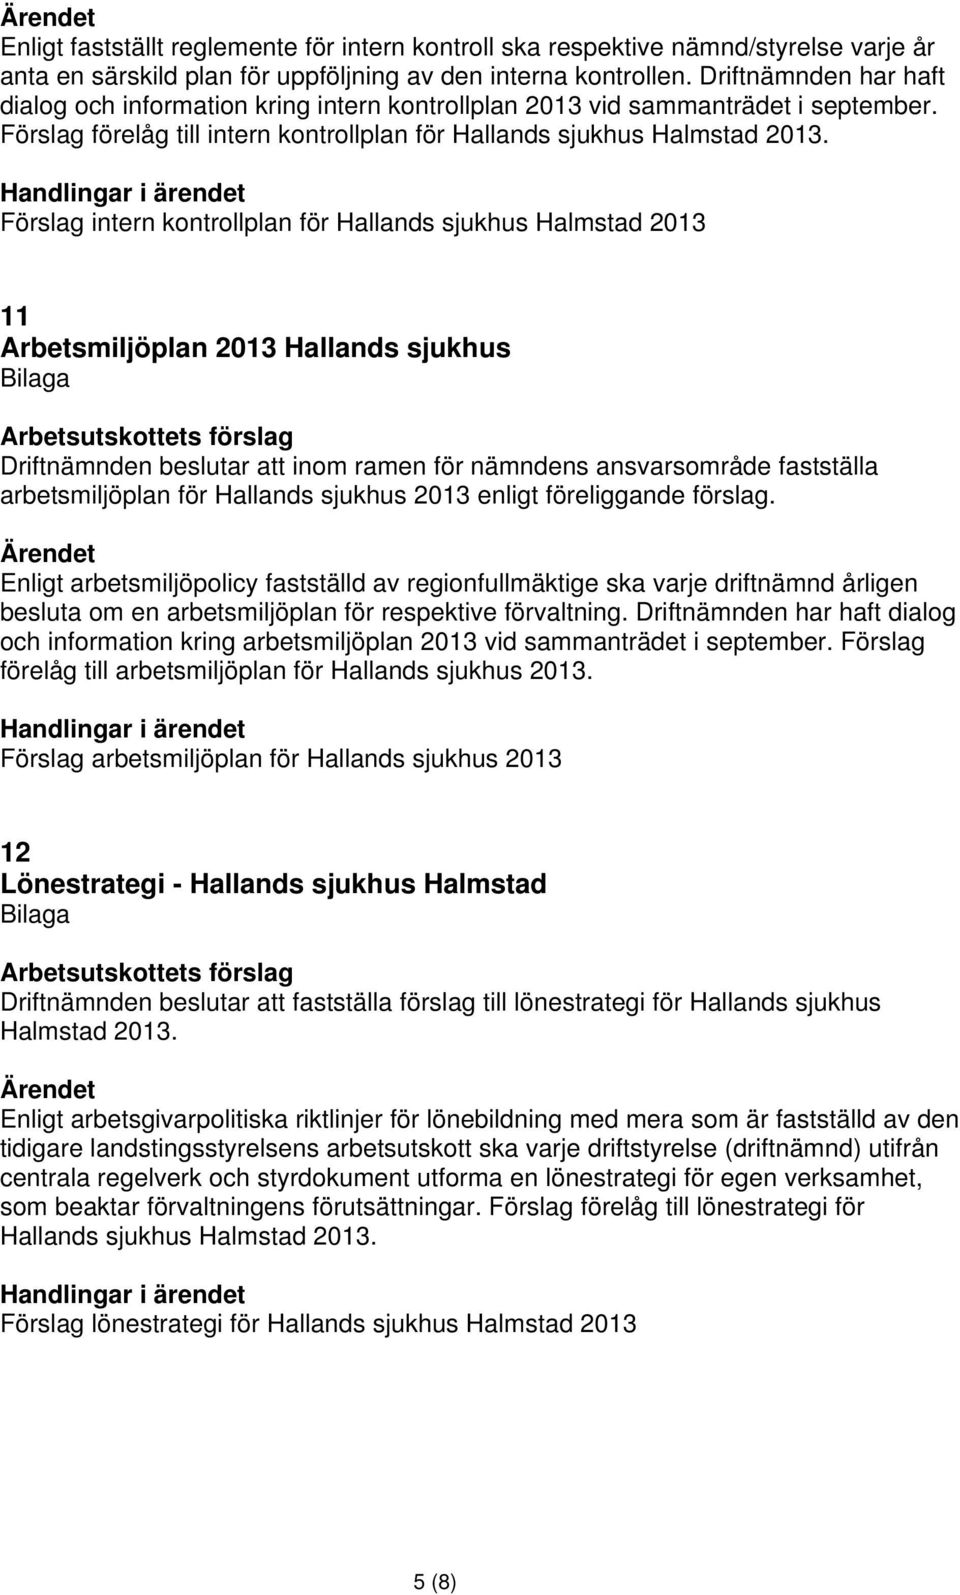 Förslag intern kontrollplan för Hallands sjukhus Halmstad 2013 11 Arbetsmiljöplan 2013 Hallands sjukhus Driftnämnden beslutar att inom ramen för nämndens ansvarsområde fastställa arbetsmiljöplan för